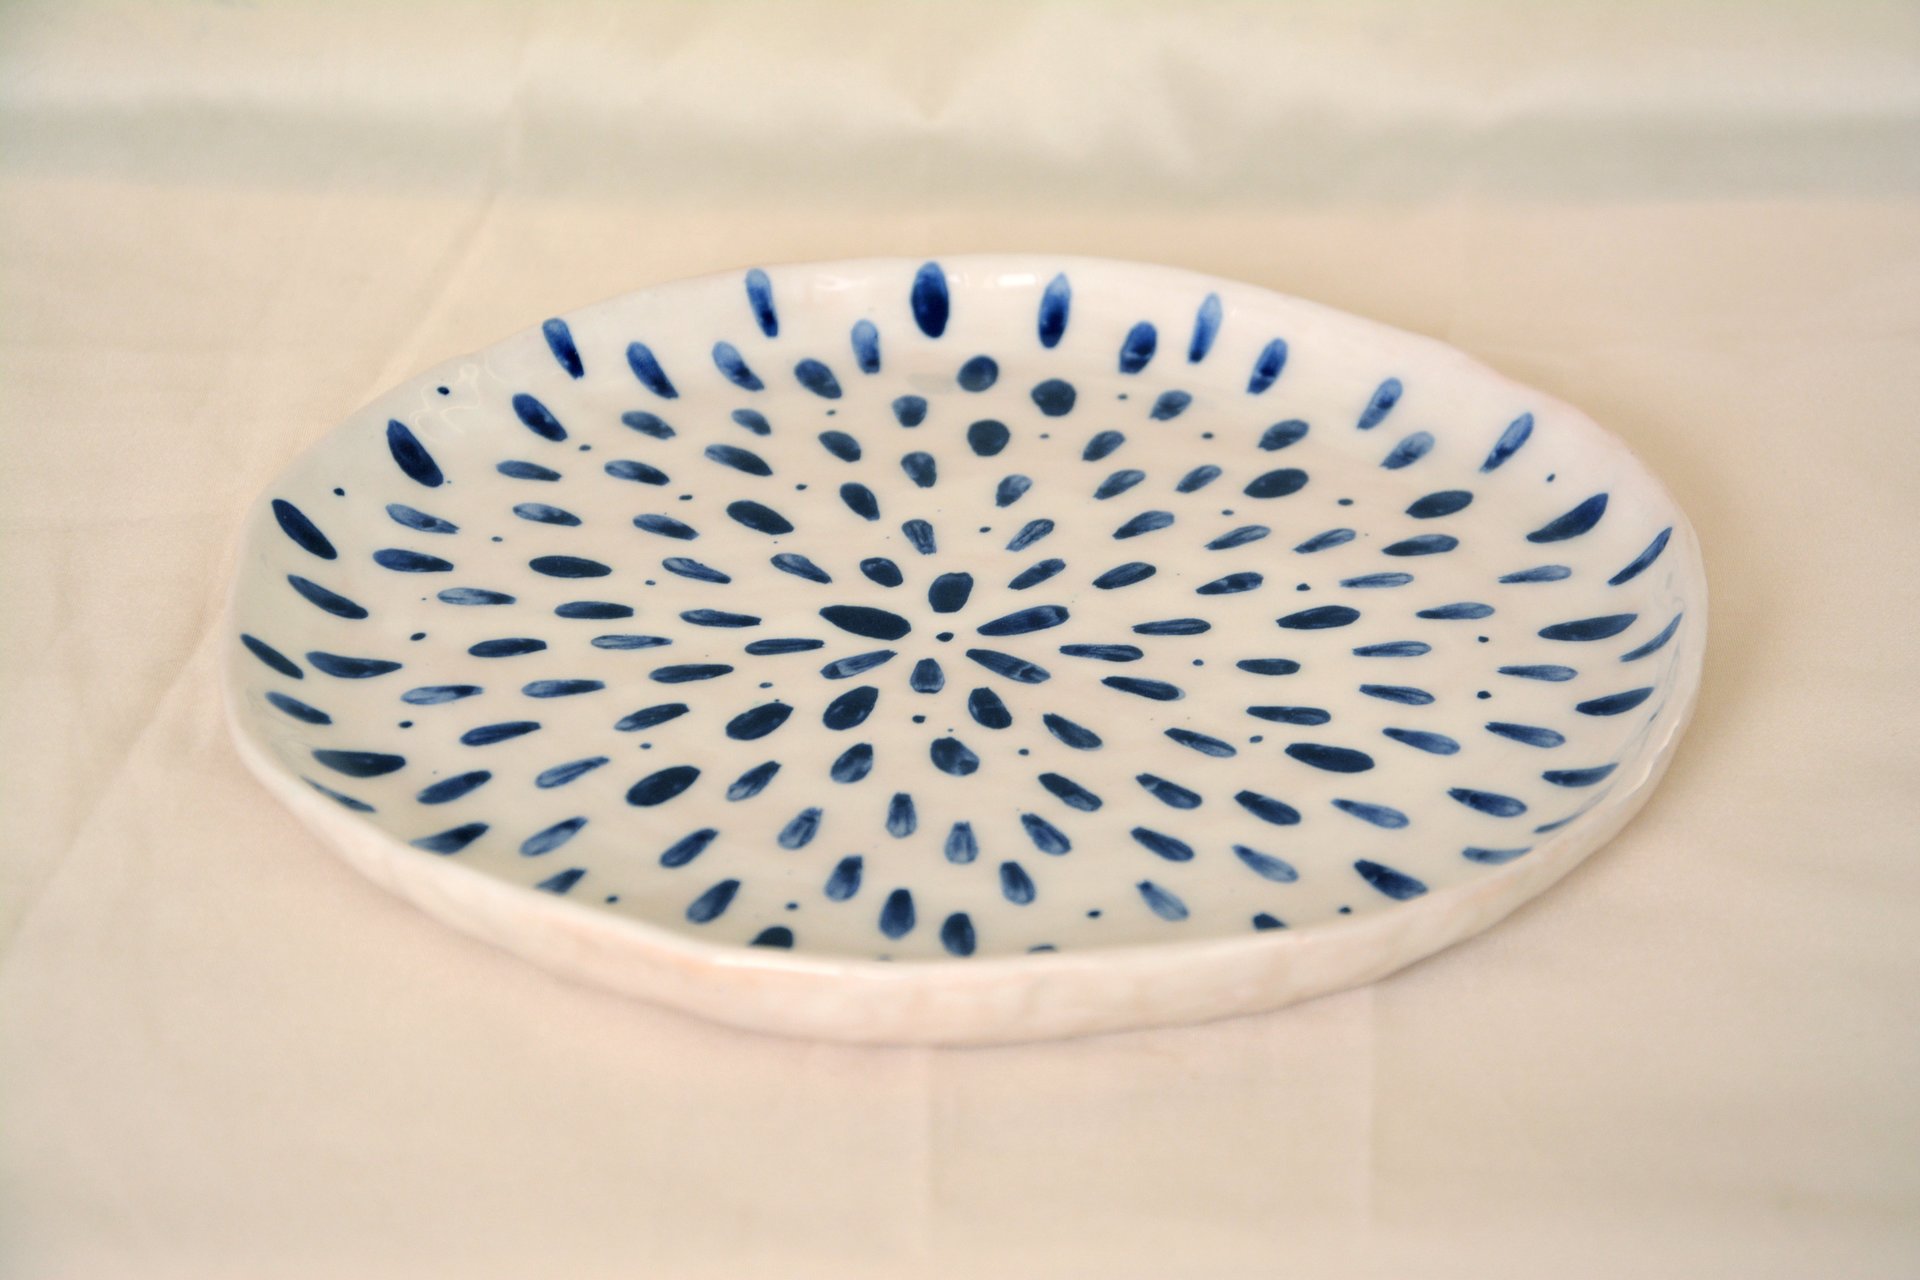 Синие капли на белом - Керамические тарелки, диаметр - 22 см, высота - 2 см, фото 2 из 4.